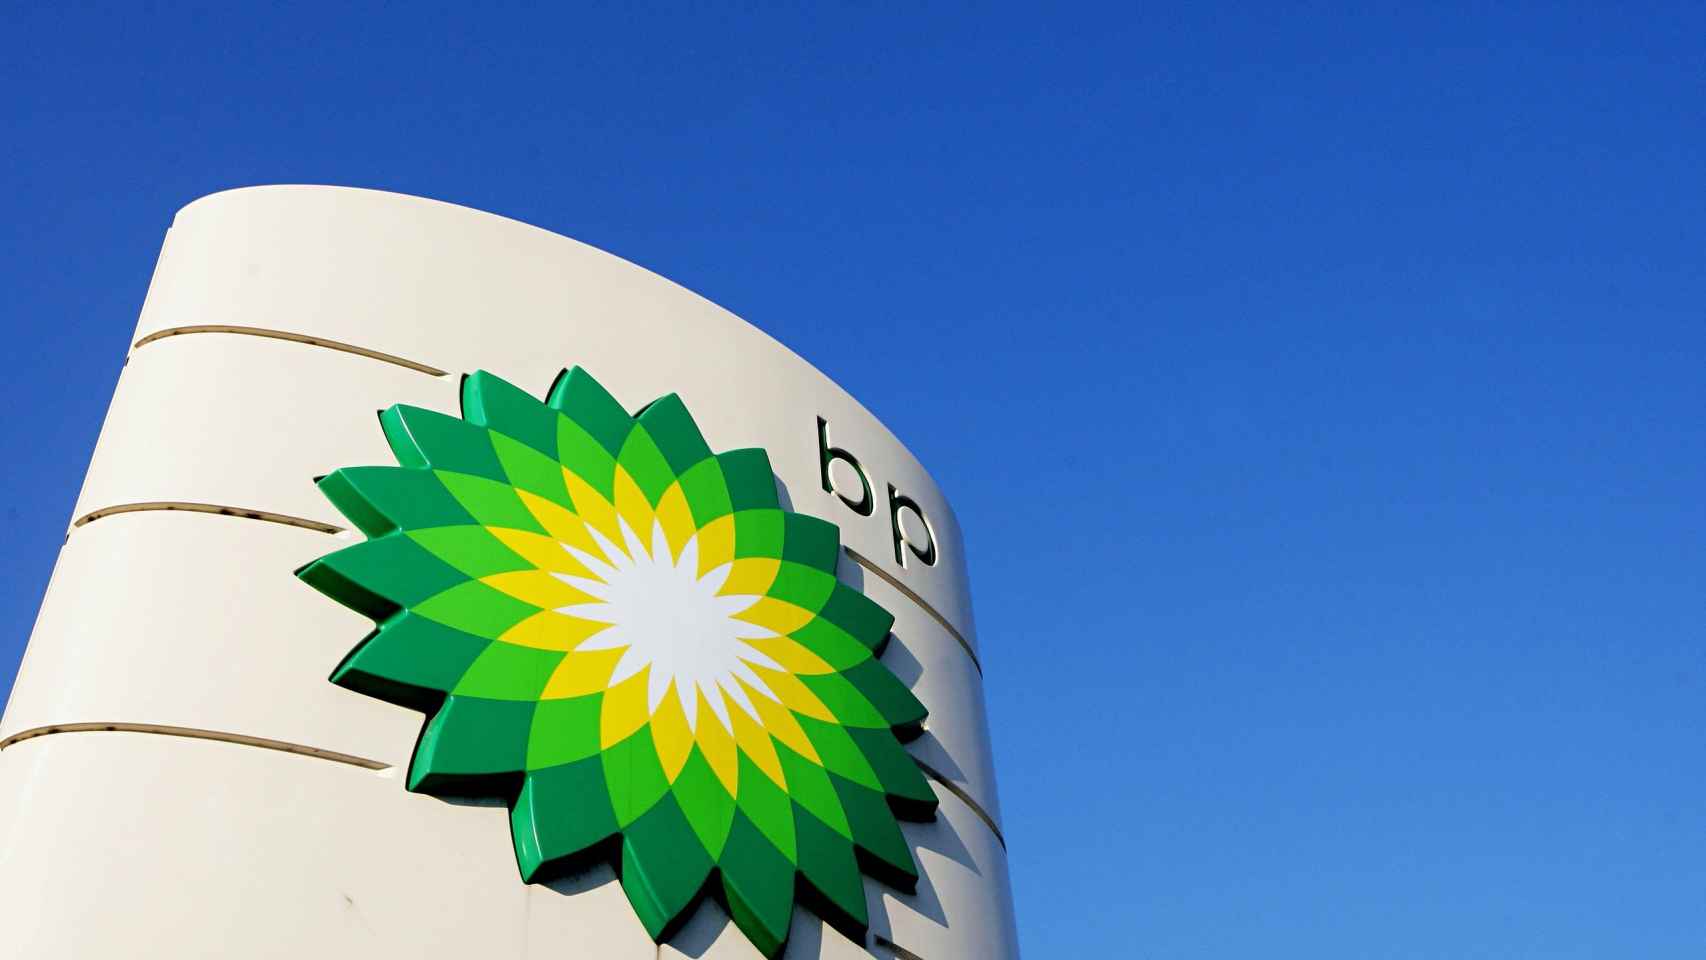 Reuters: Petrolera BP suspende conversaciones sobre yacimientos de gas con Venezuela tras expirar la licencia